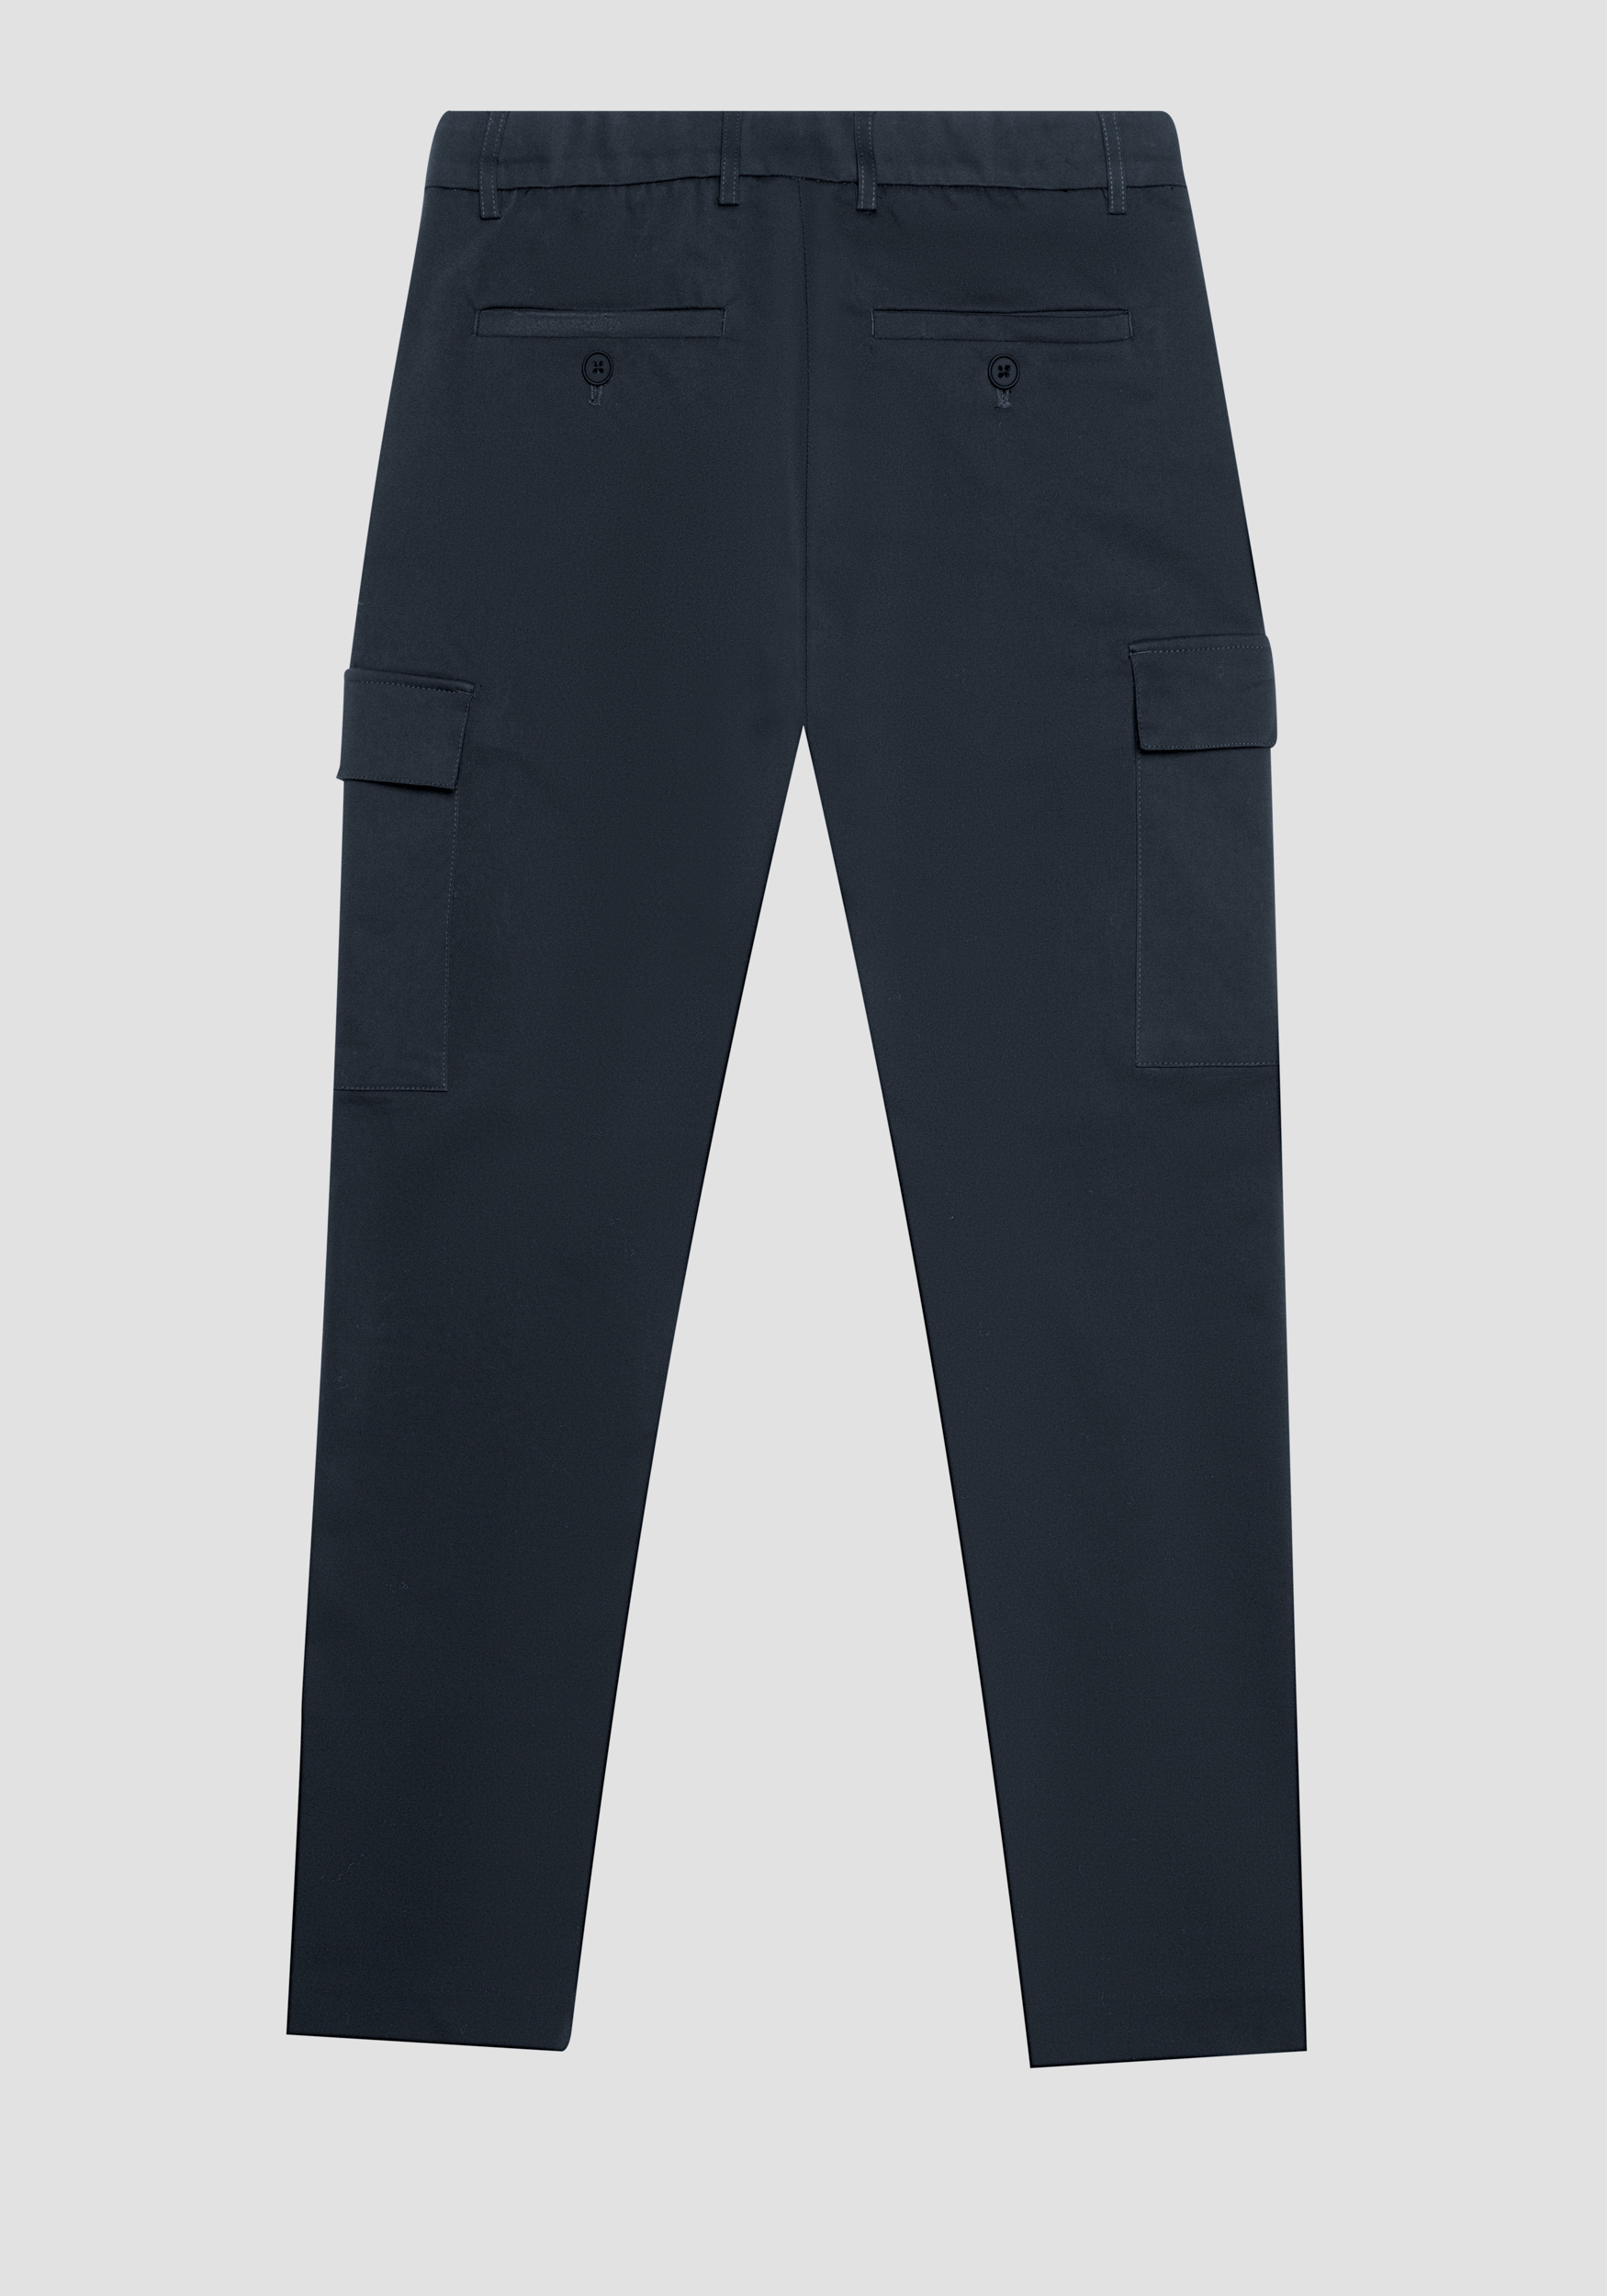 Antony Morato Pantalon Skinny Fit Bjorn En Coton Melange Elastique Avec Poches Laterales Et Zip Sur Le Bas Encre Bleu | Homme Pantalons